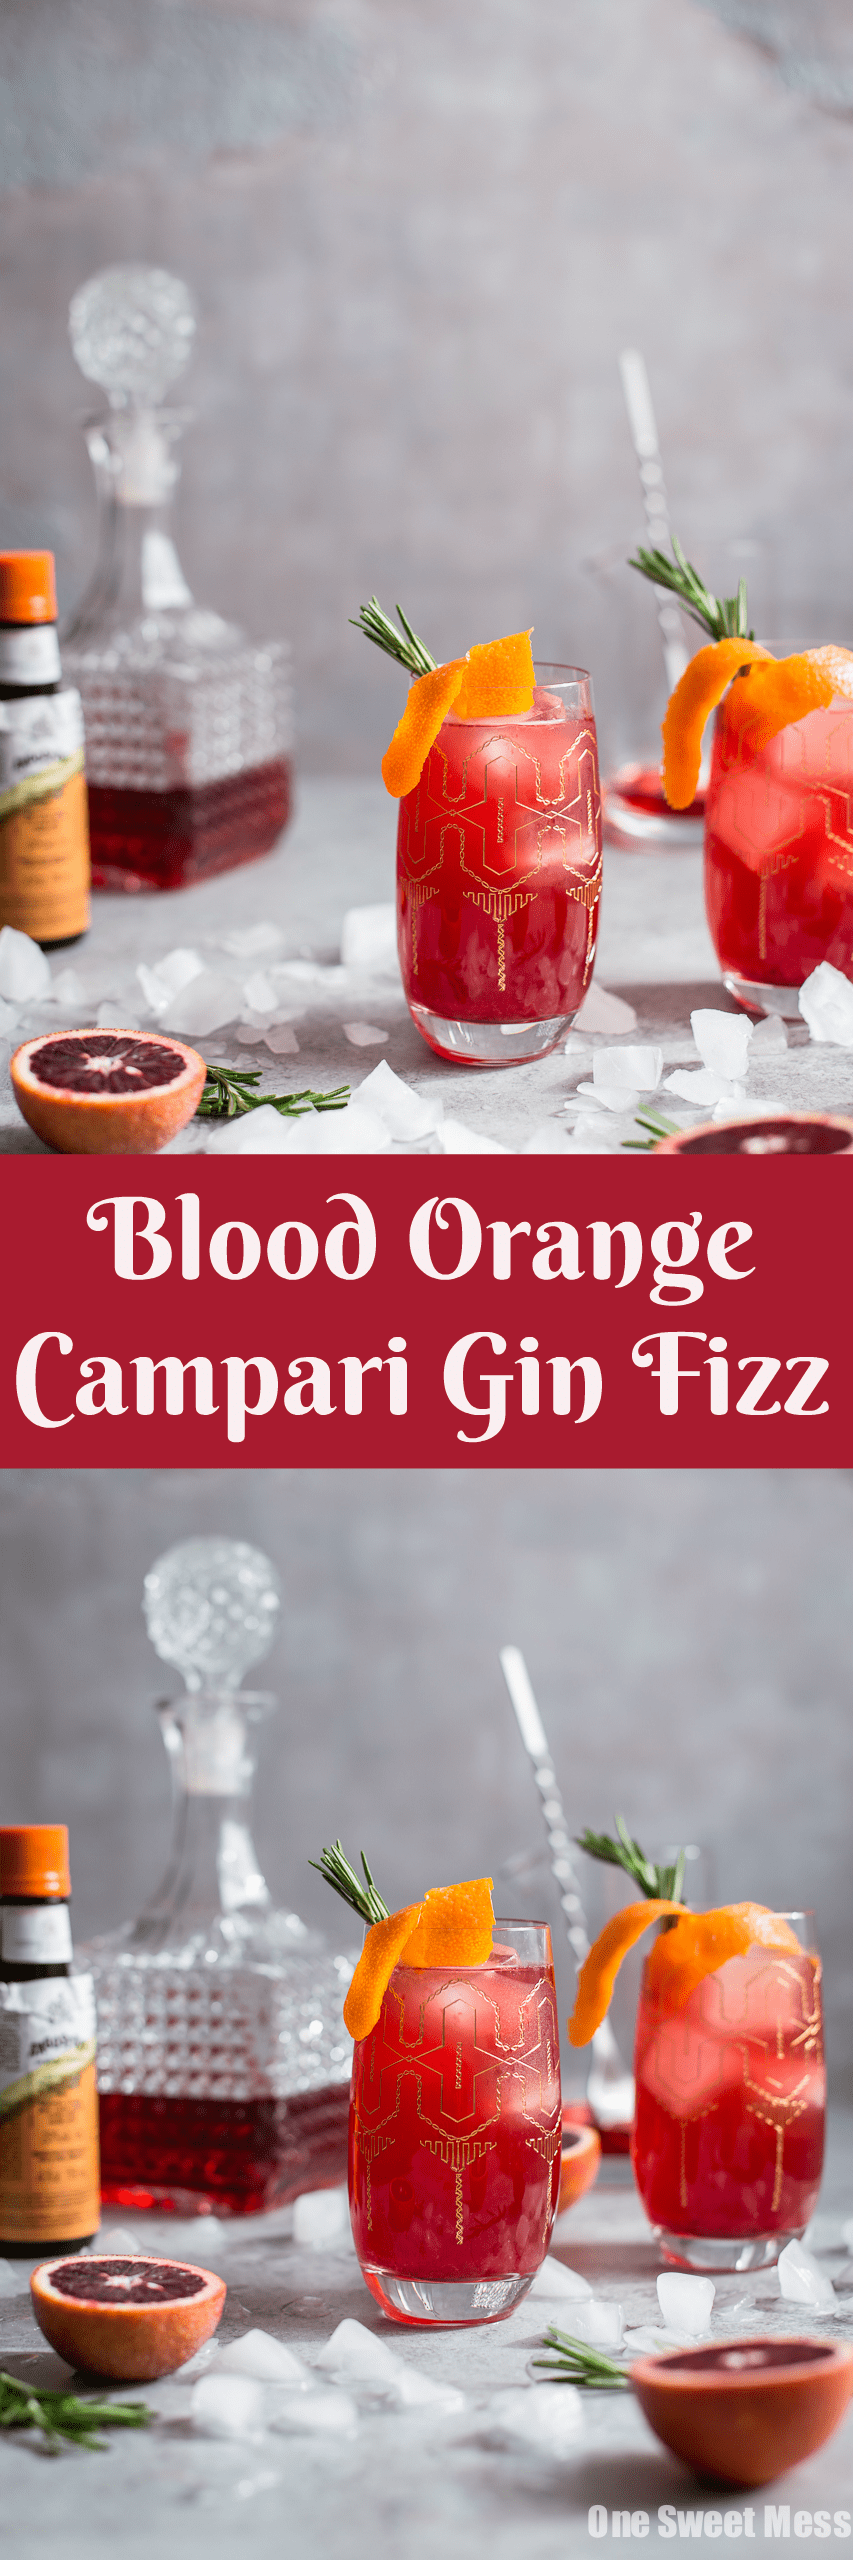 Blood Orange Campari Gin Fizz